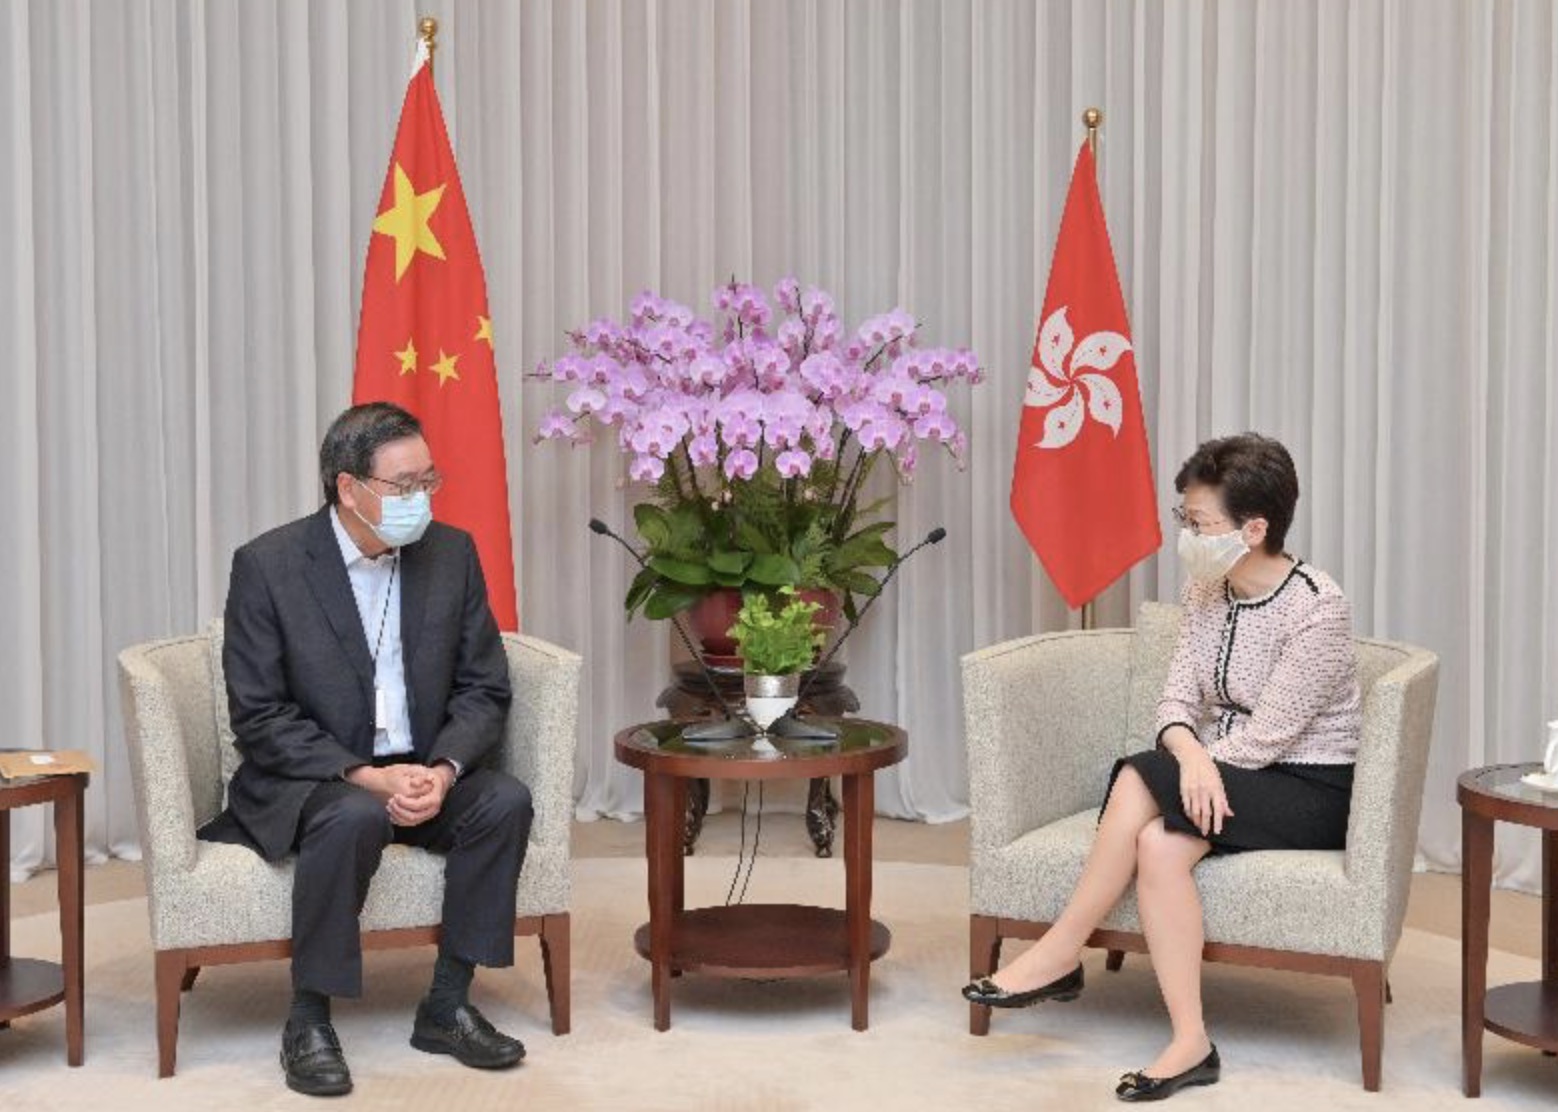  香港特首林郑月娥与香港立法会主席梁君彦会面 